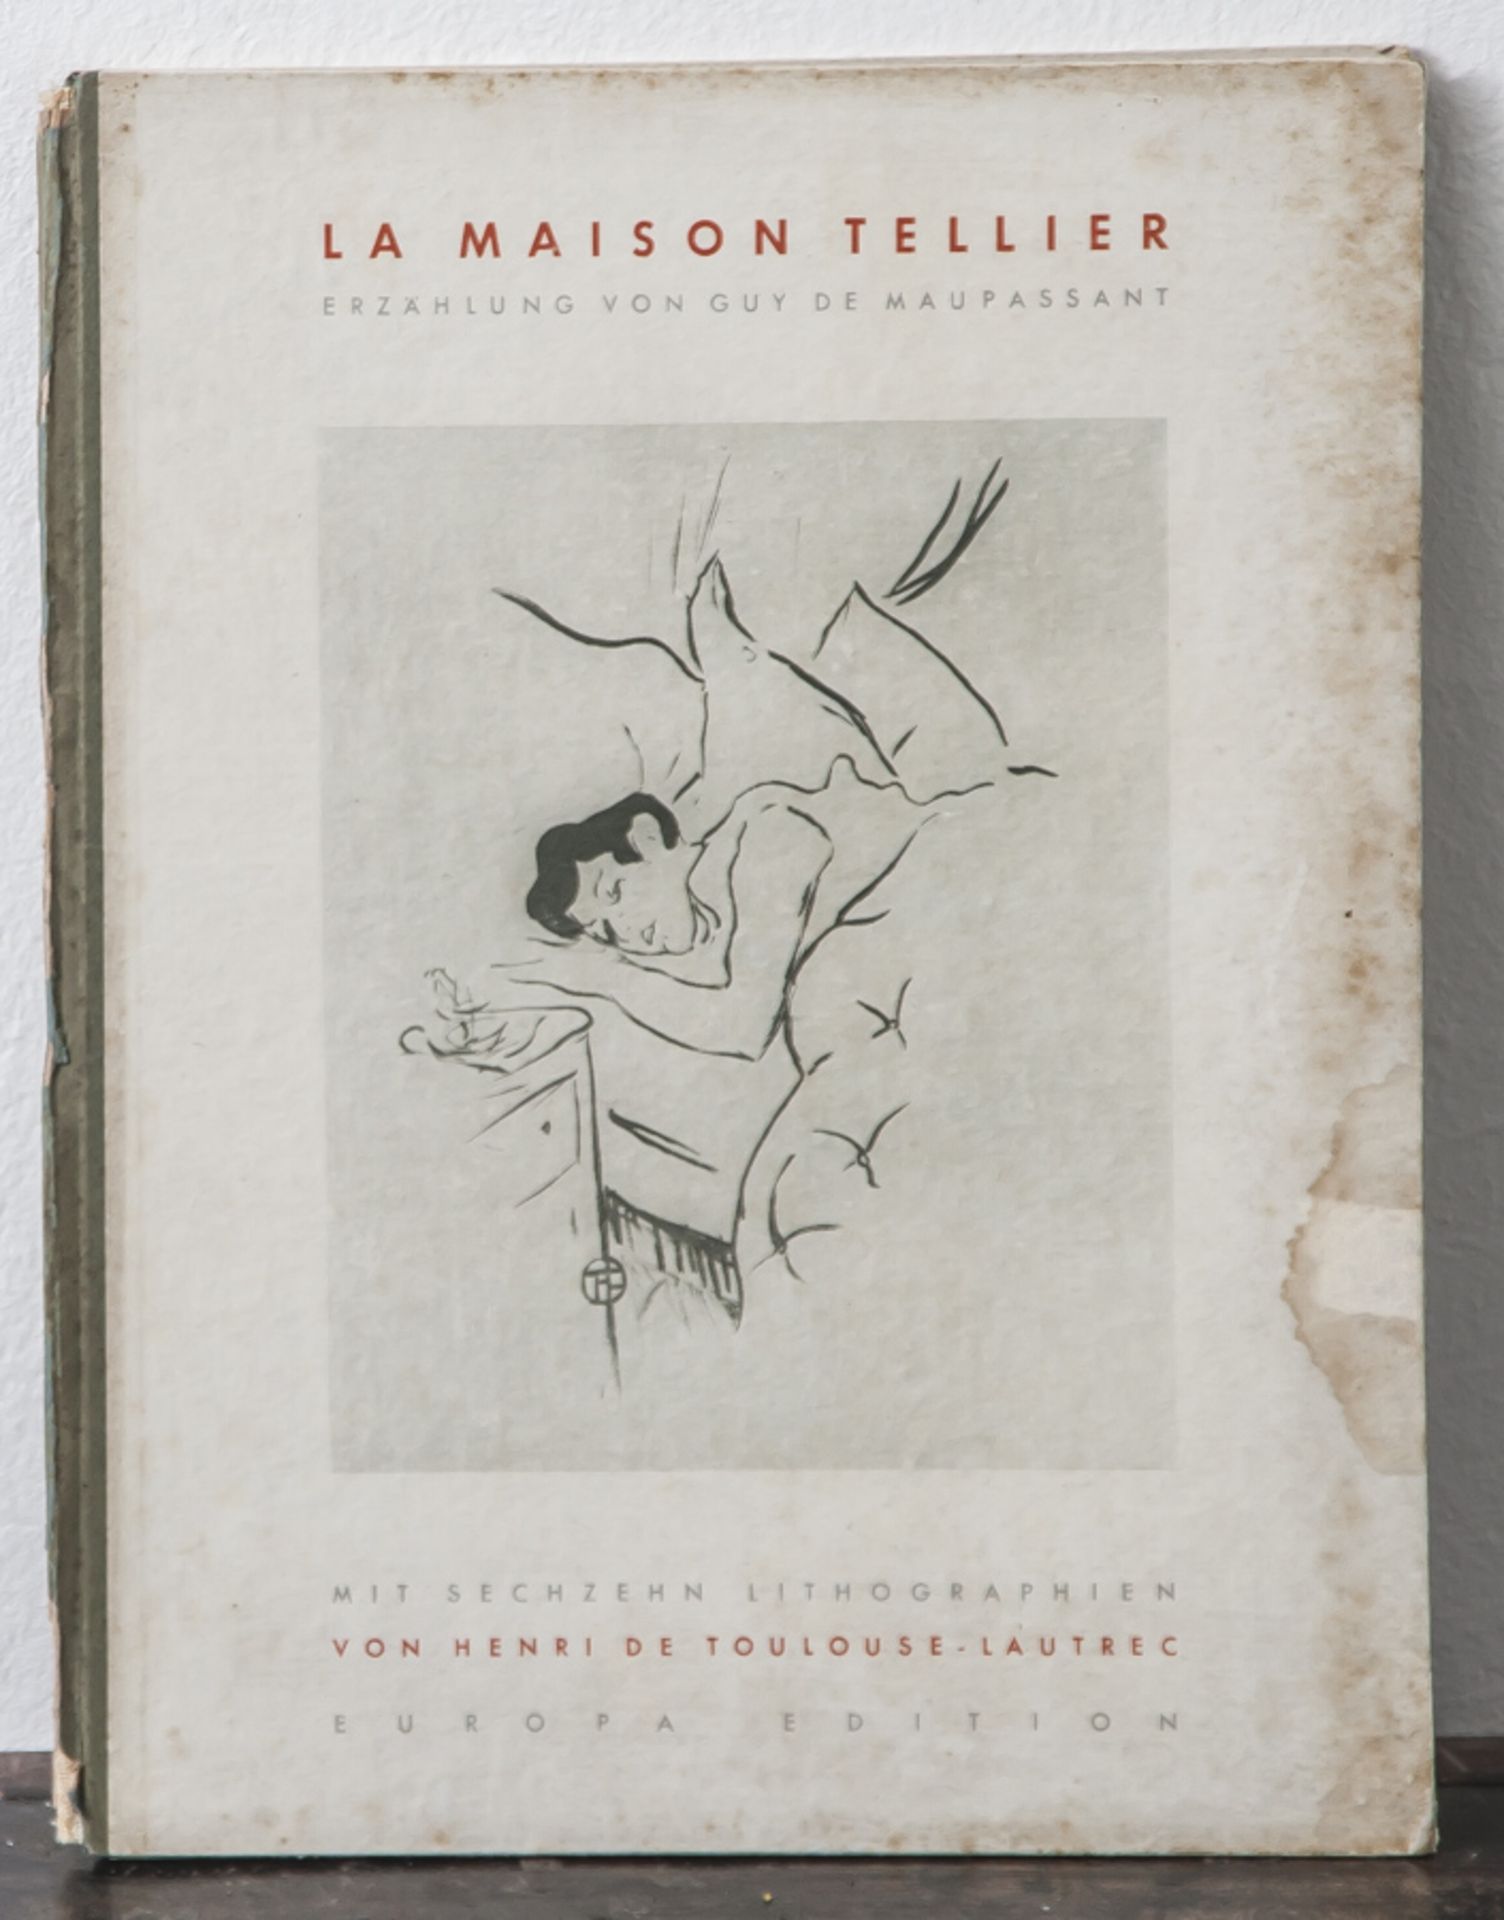 La Maison Tellier, Erzählung von Guy de Maupassant. Mit sechszehn Lithographien von Henride